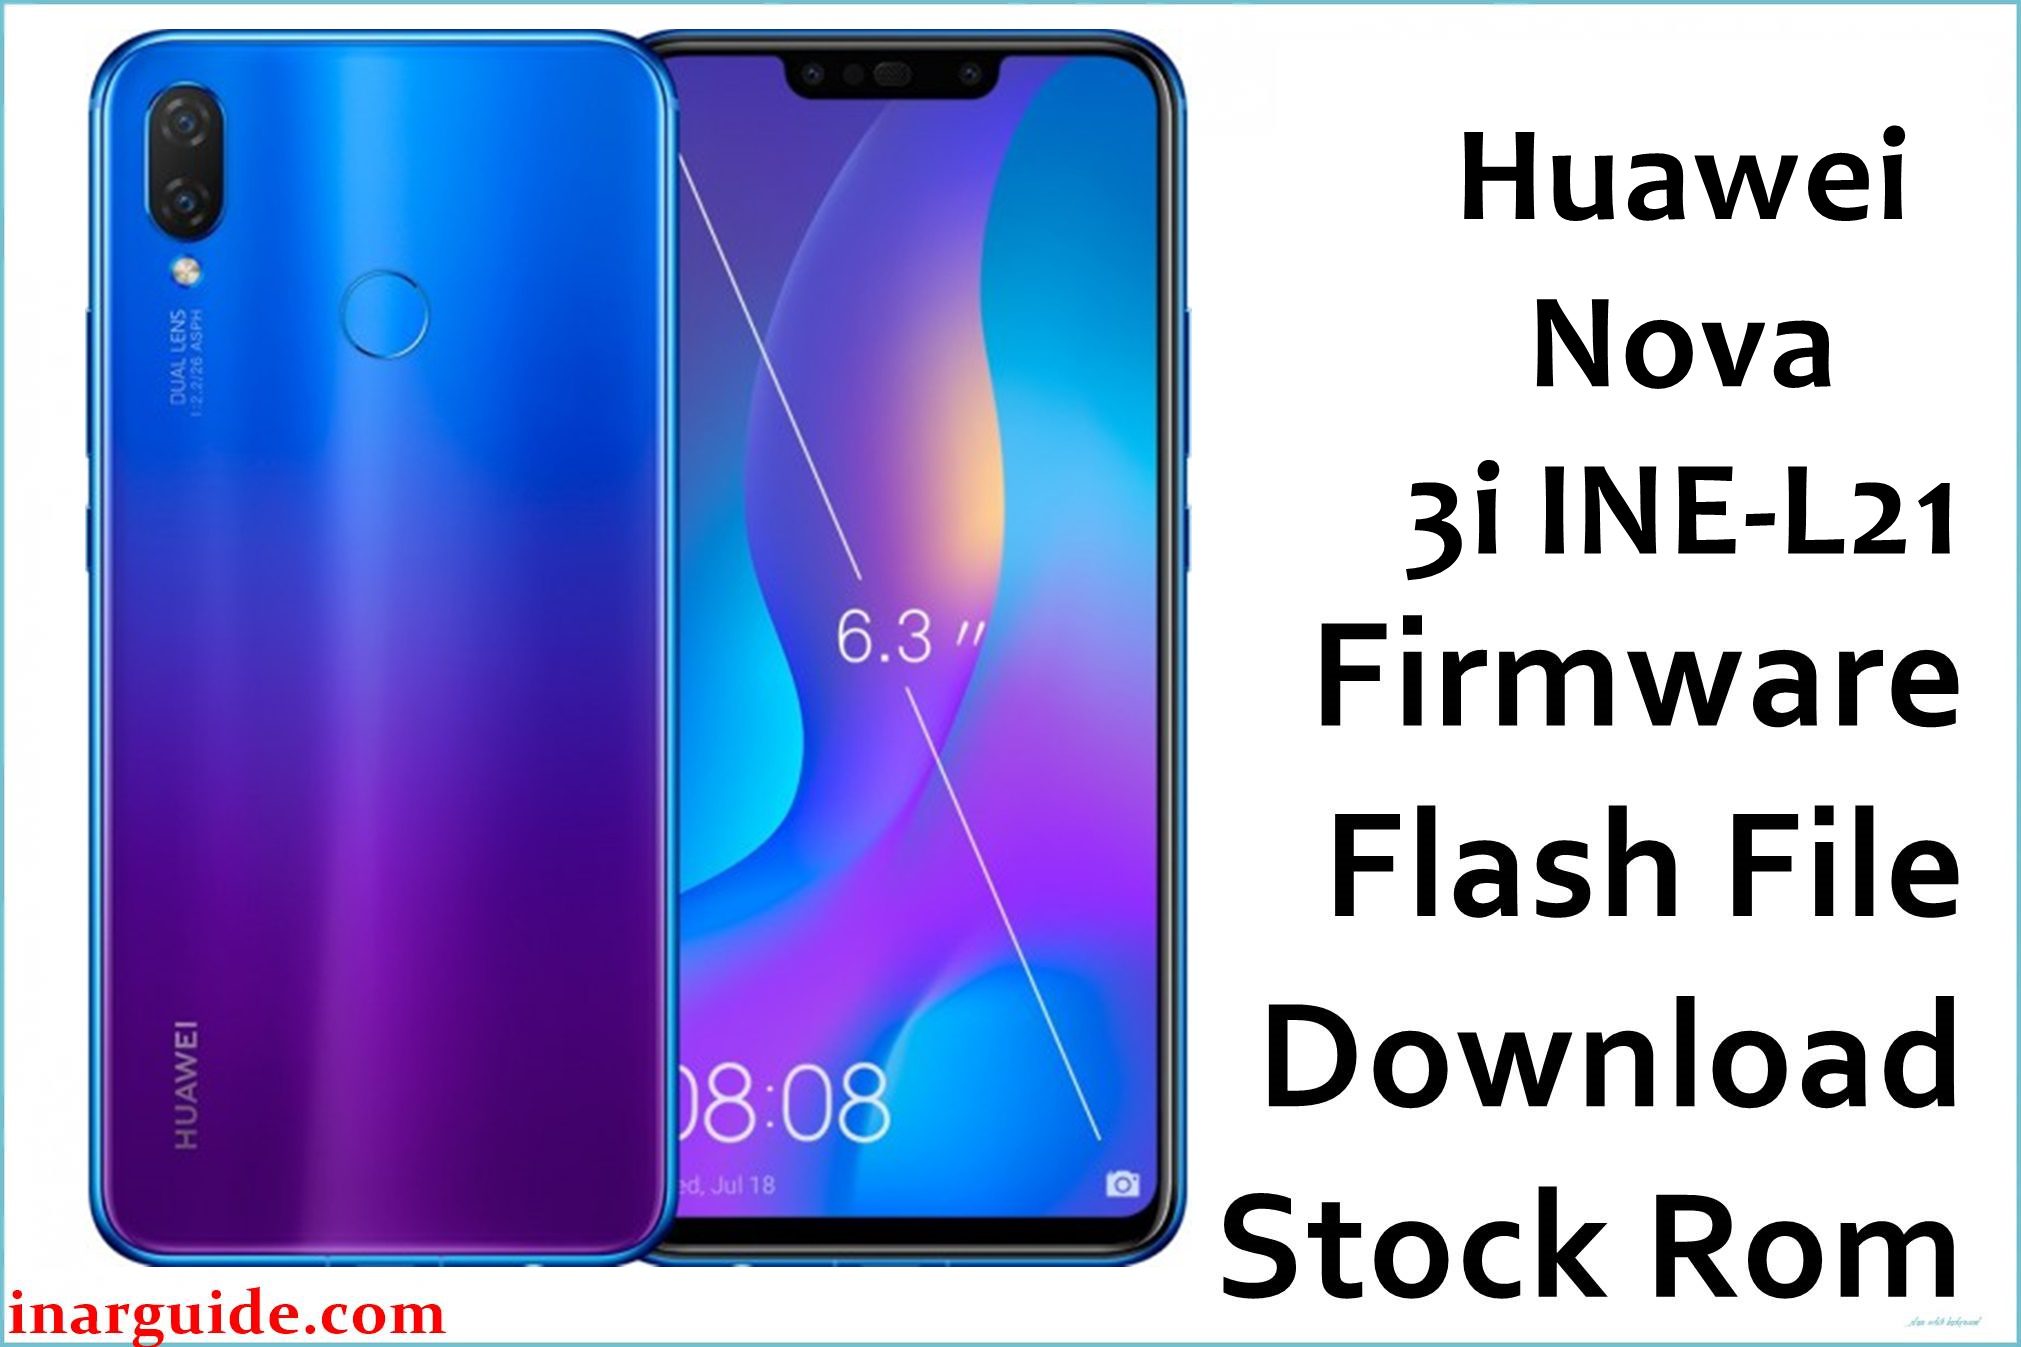 Huawei Nova 3i INE L21